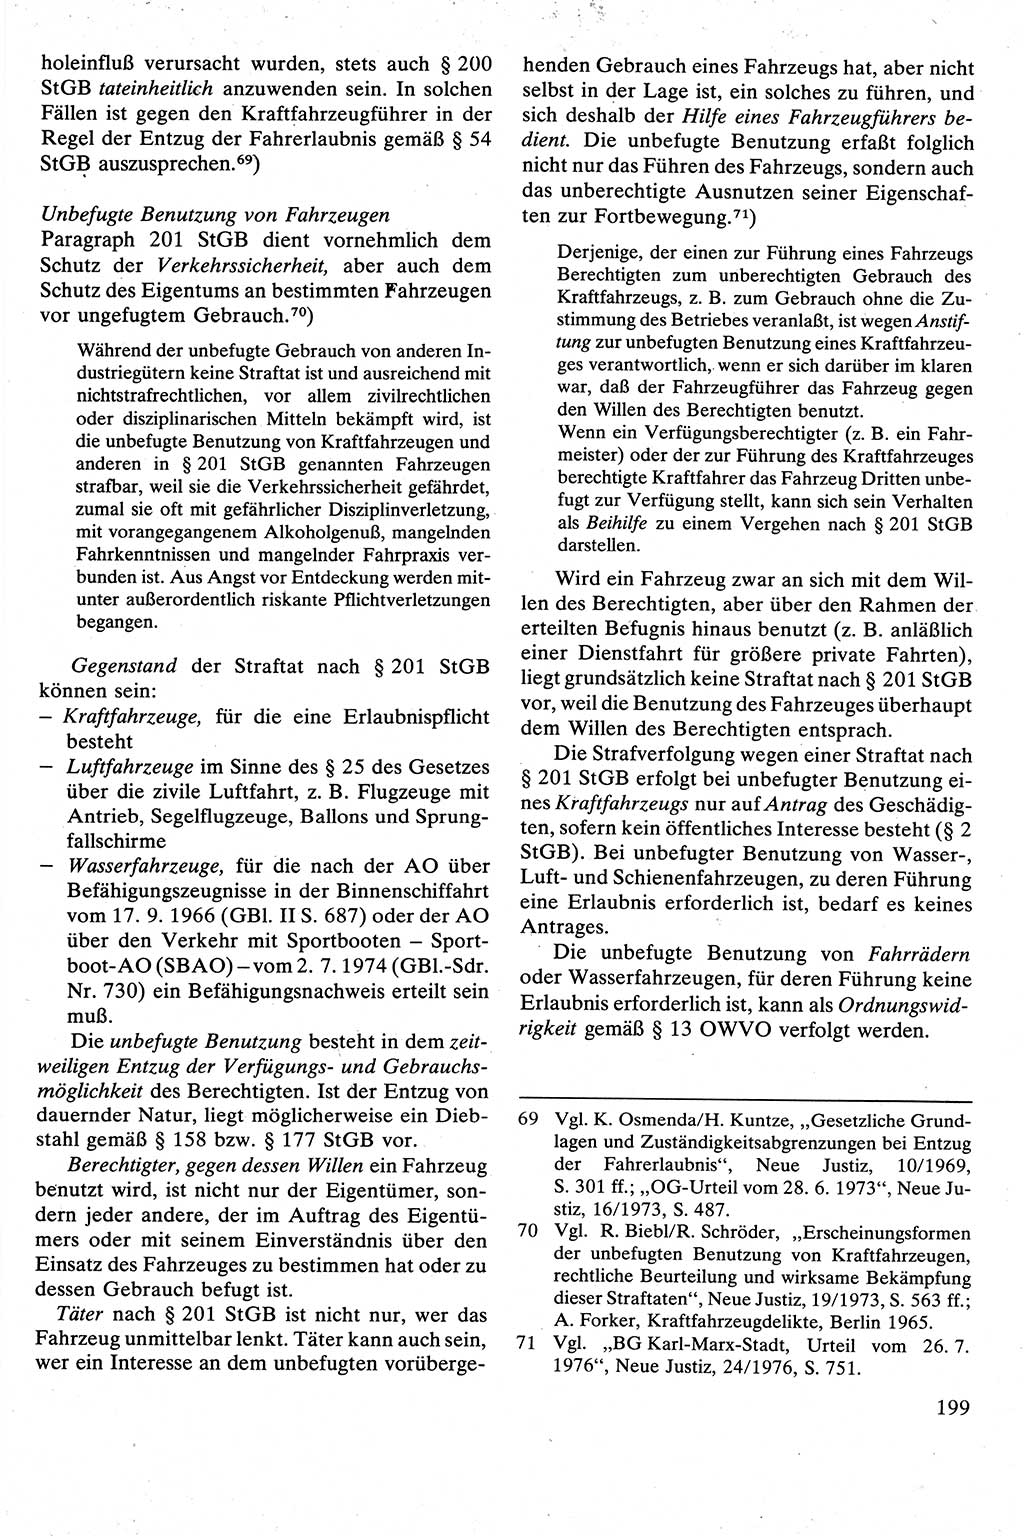 Strafrecht [Deutsche Demokratische Republik (DDR)], Besonderer Teil, Lehrbuch 1981, Seite 199 (Strafr. DDR BT Lb. 1981, S. 199)